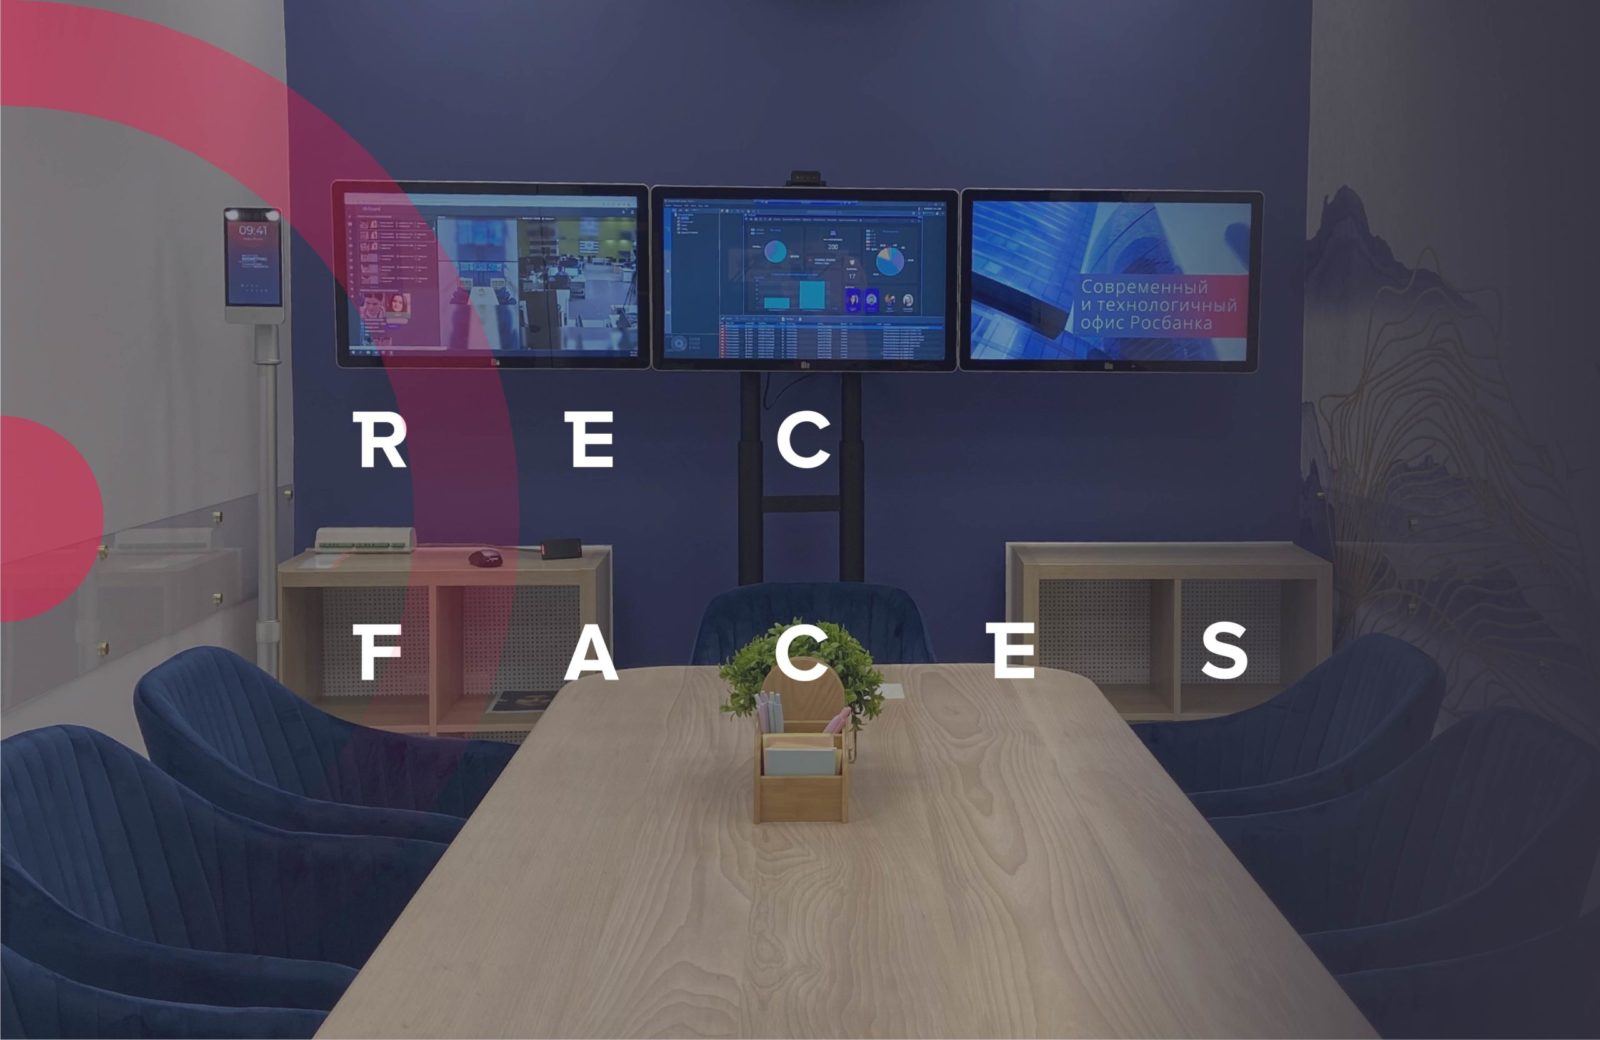  » Компания РекФэйсис открыла Учебный центр для IT-специалистов в области лицевой биометрии